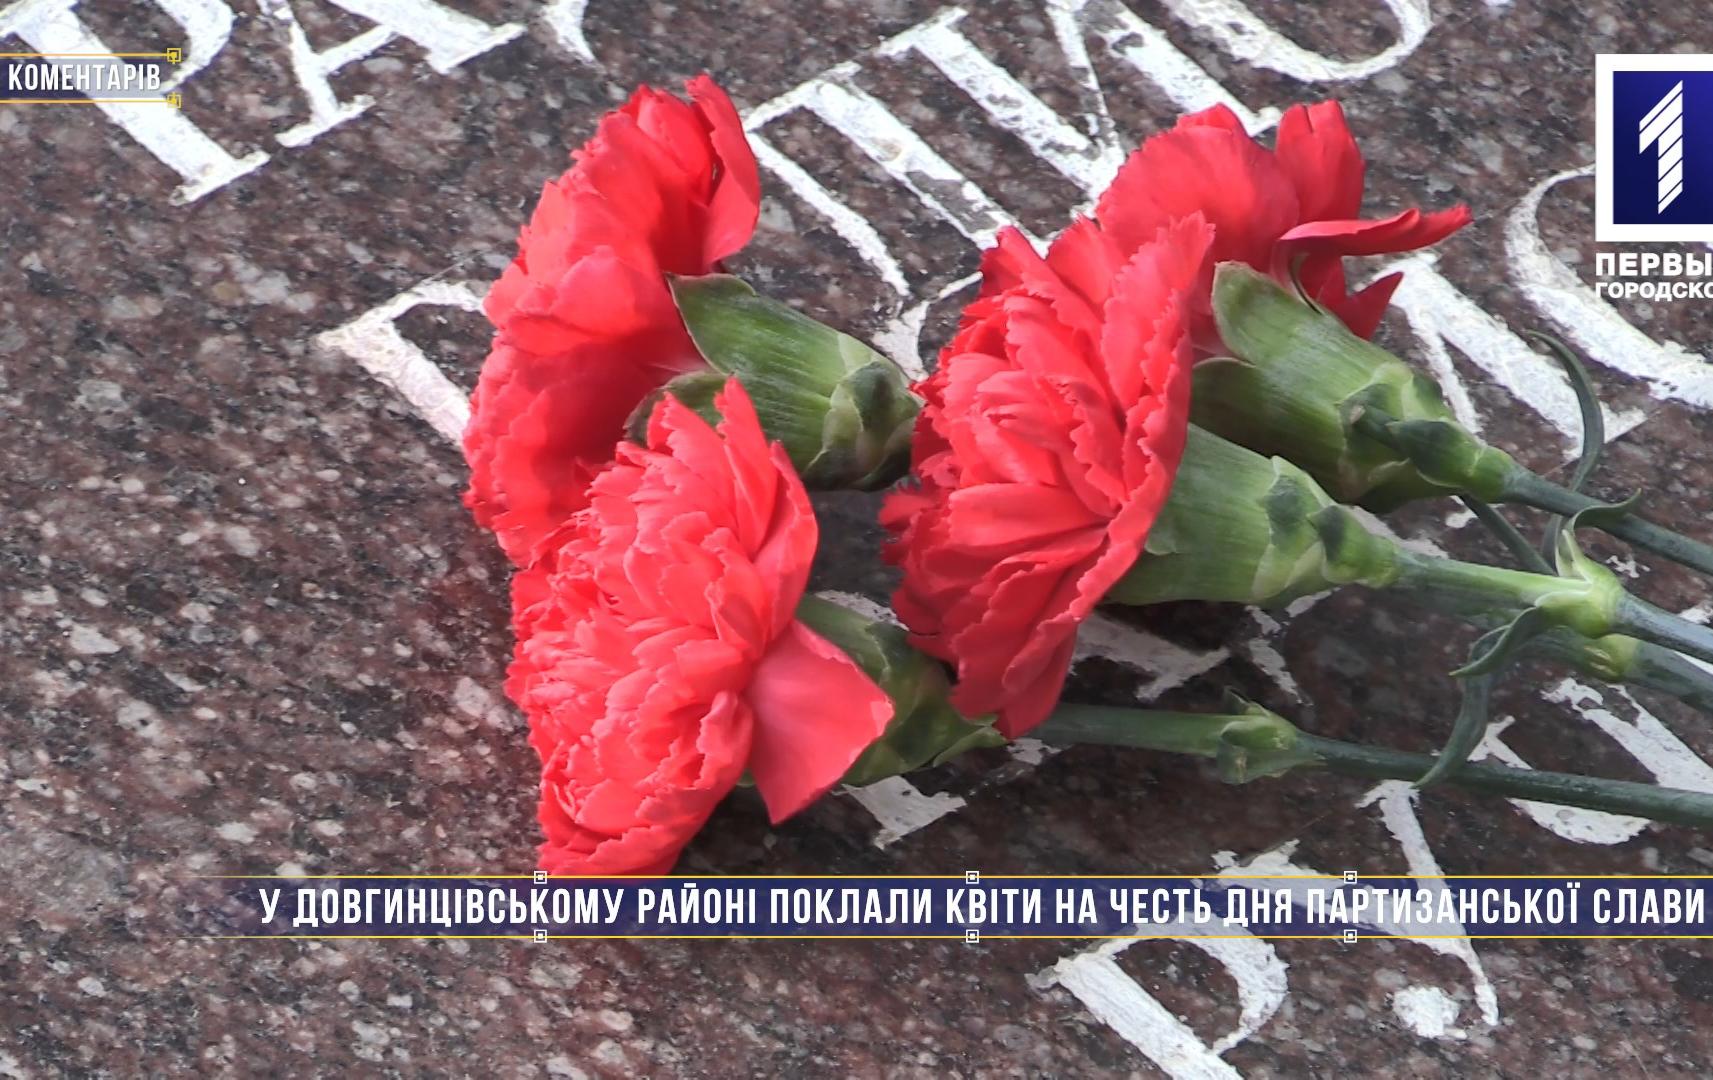 Без коментарів: у Довгинцівському районі поклали квіти на честь Дня партизанської слави